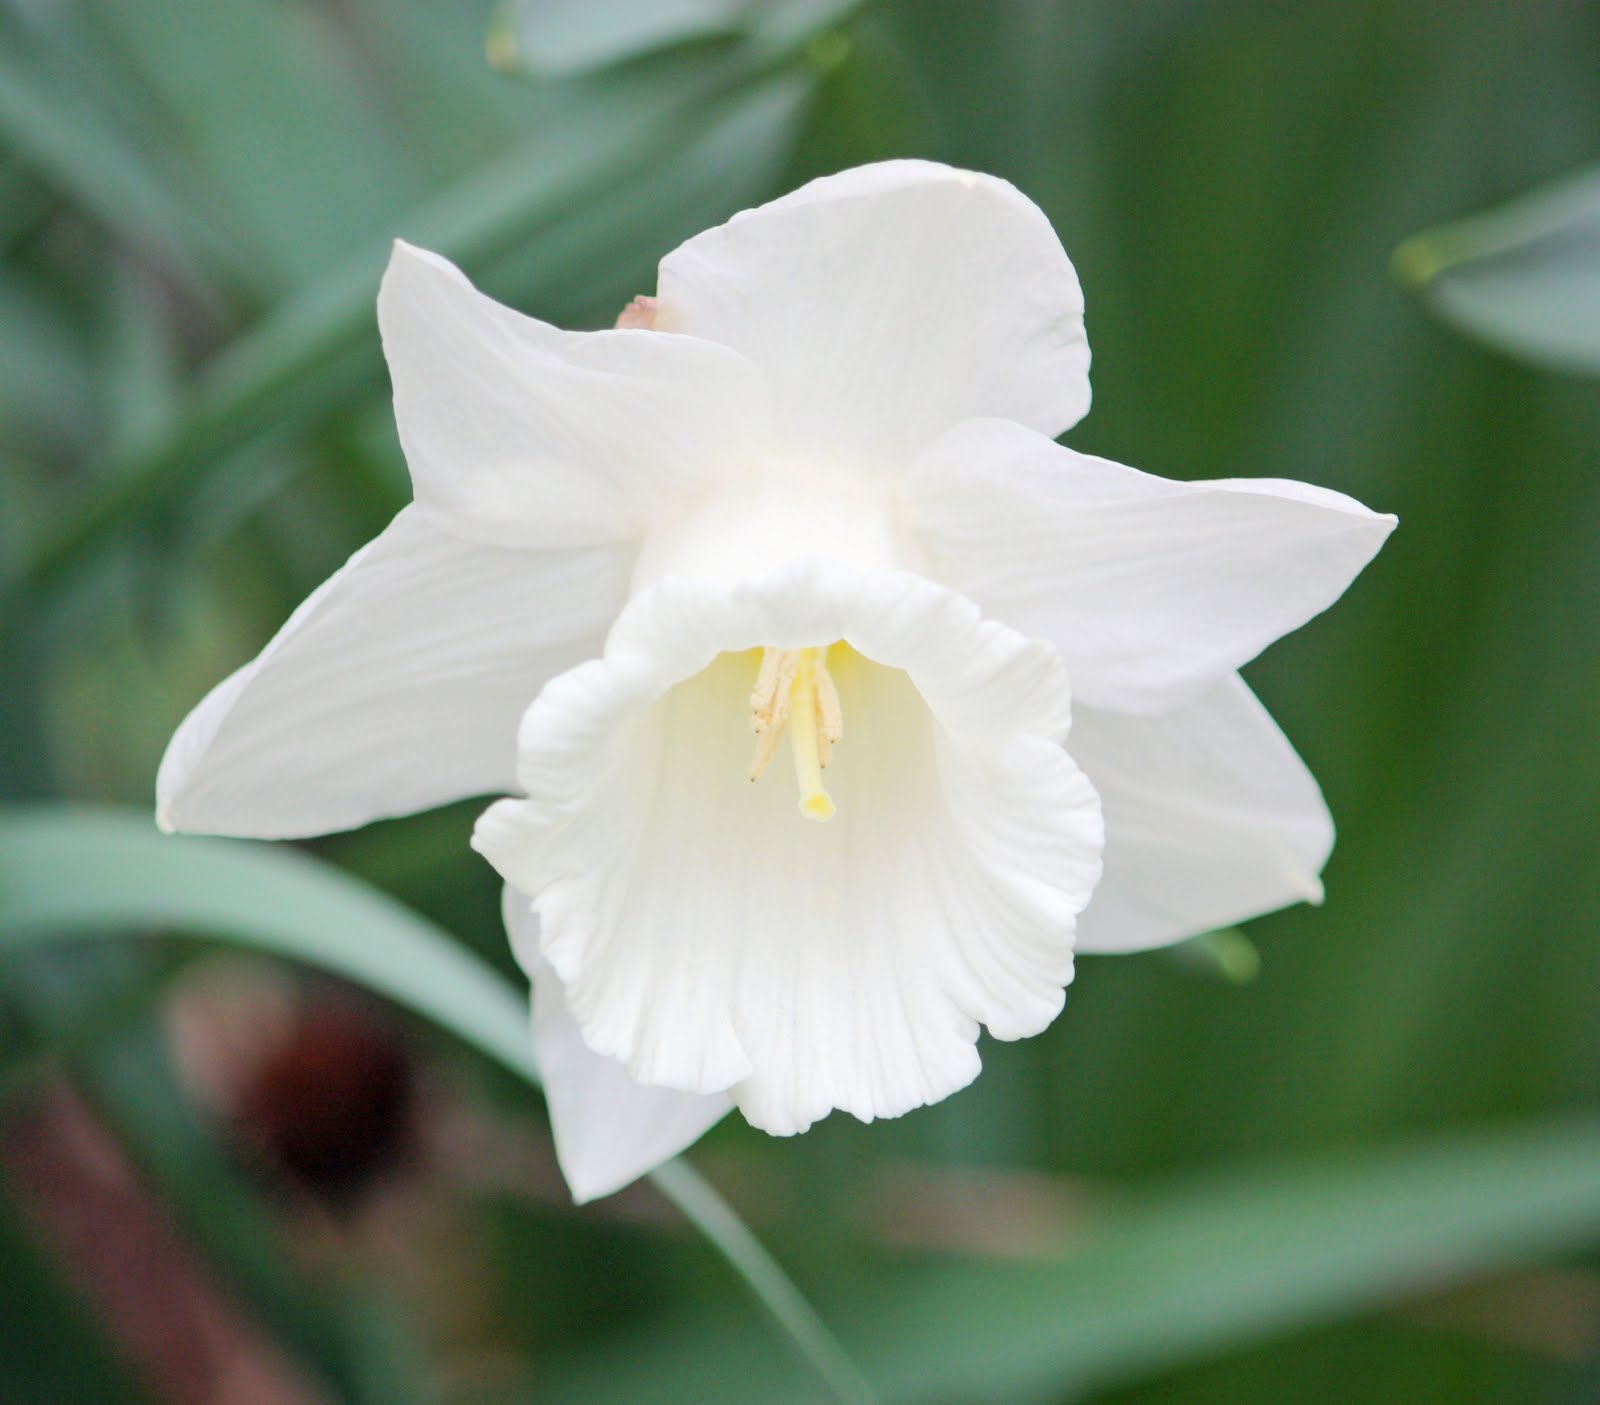 A Super White Daffodil